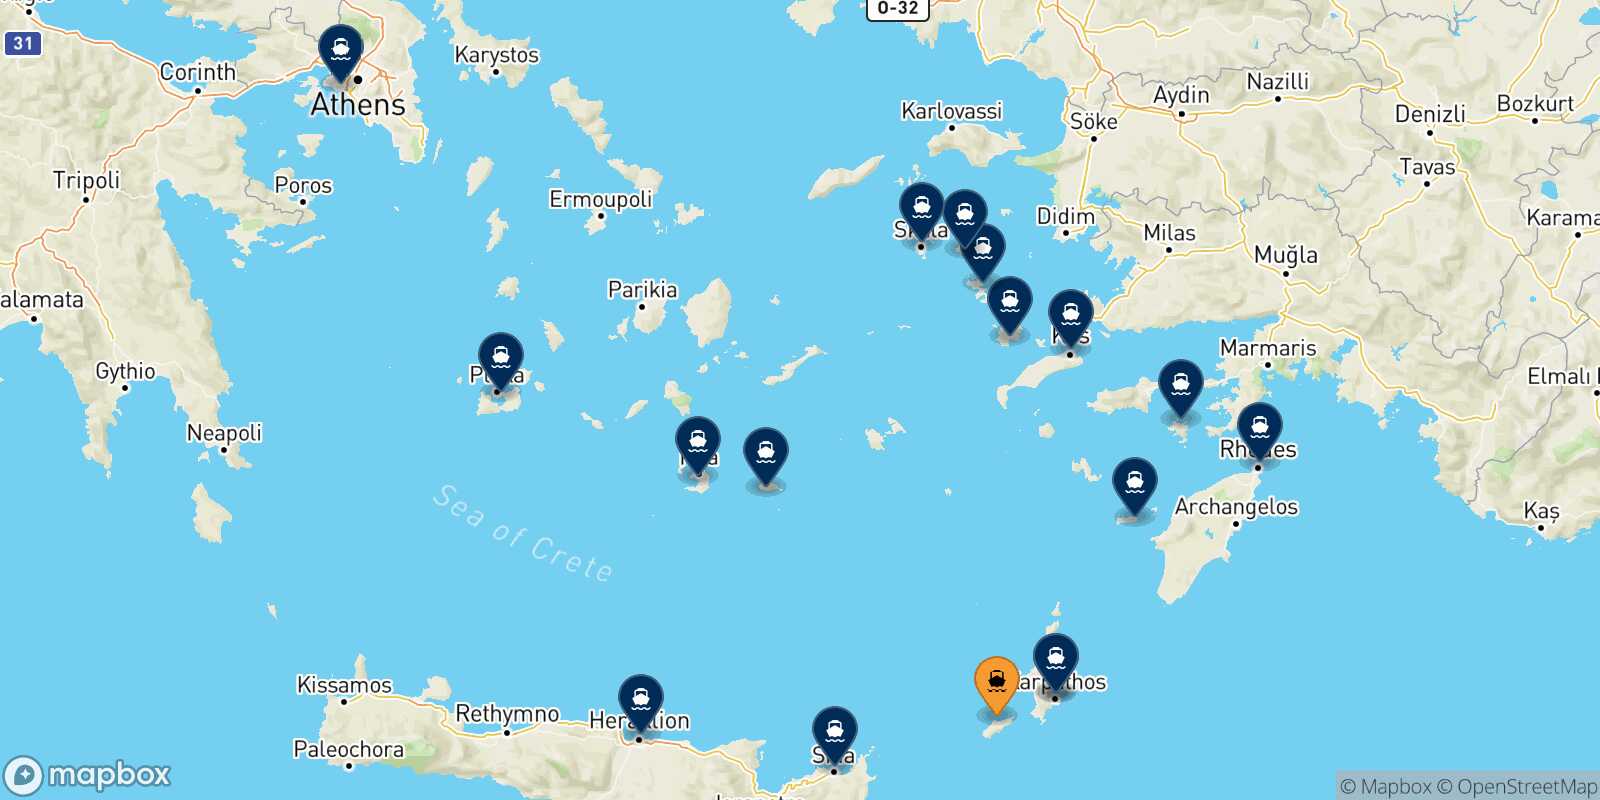 Mappa delle destinazioni raggiungibili da Kasos